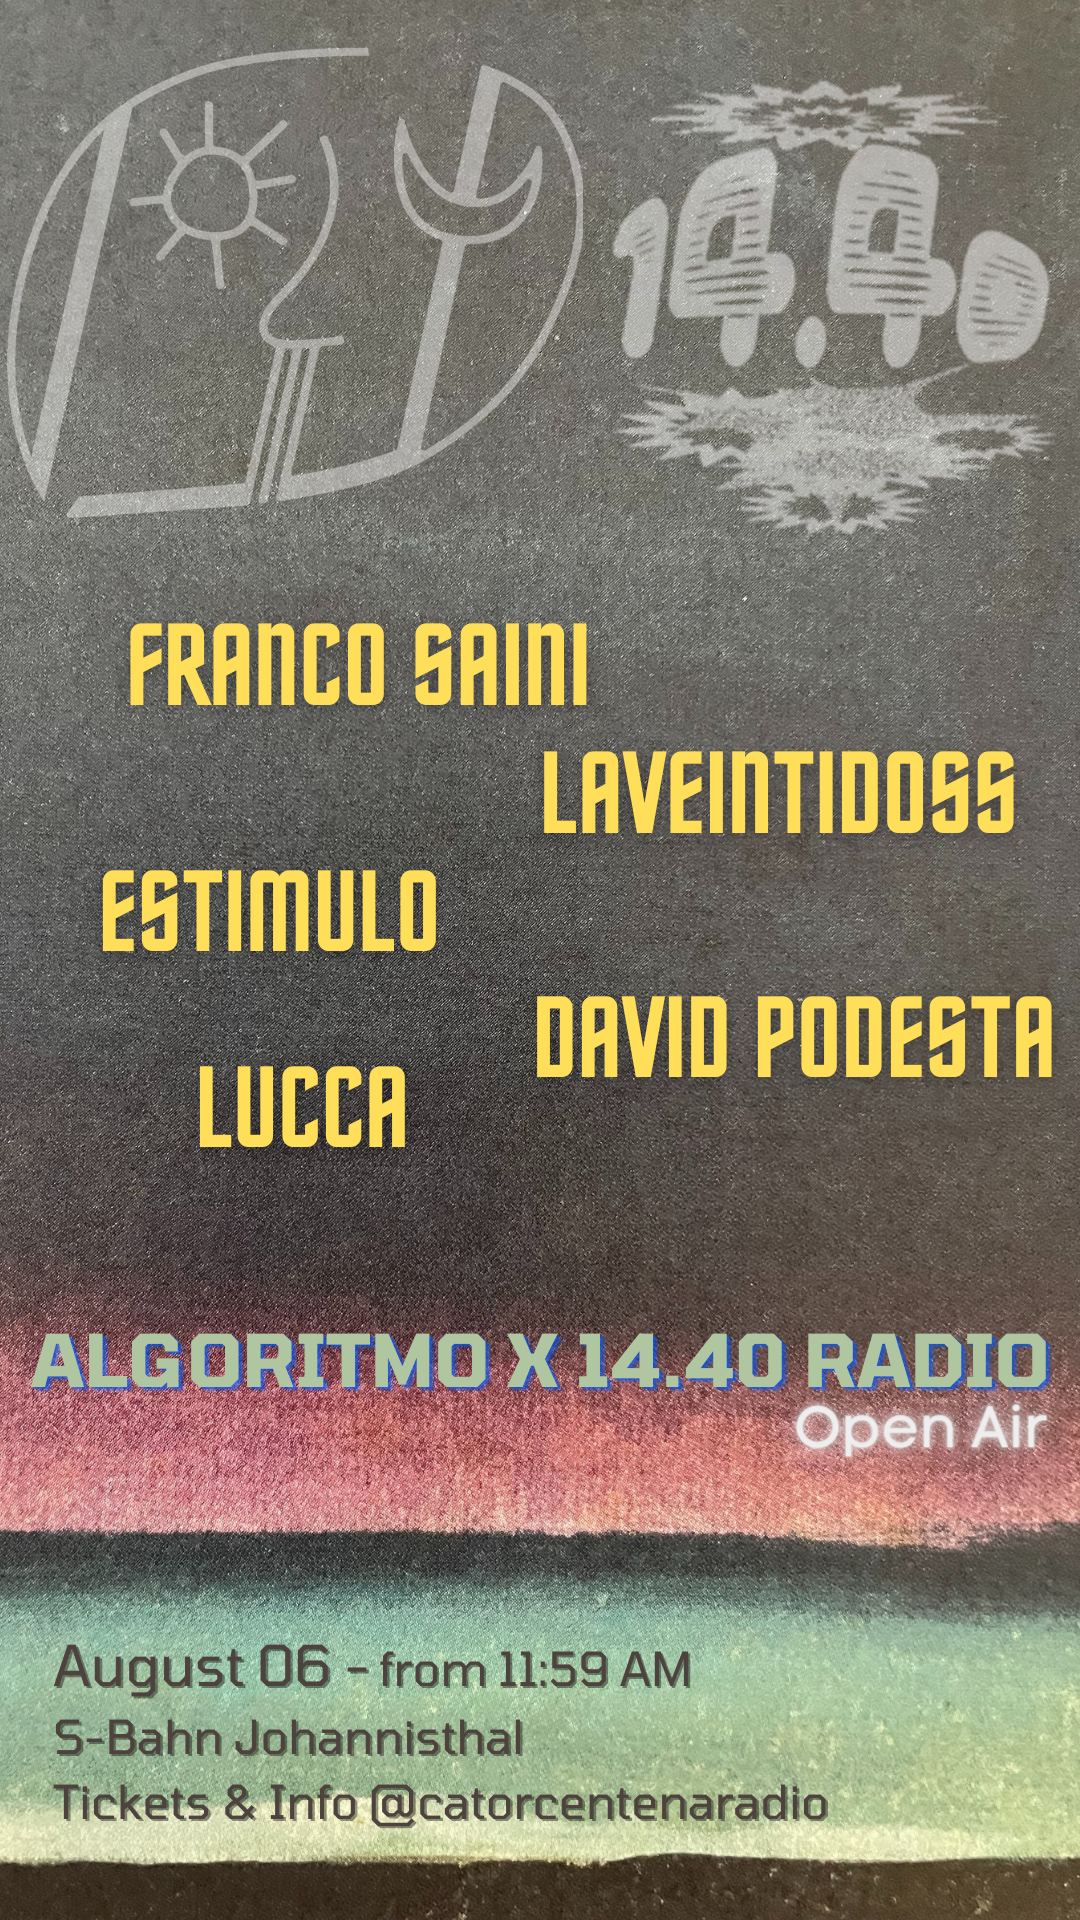 Open Air and Brunch Algoritmo x 1440 Radio Catorcentena - Flyer front